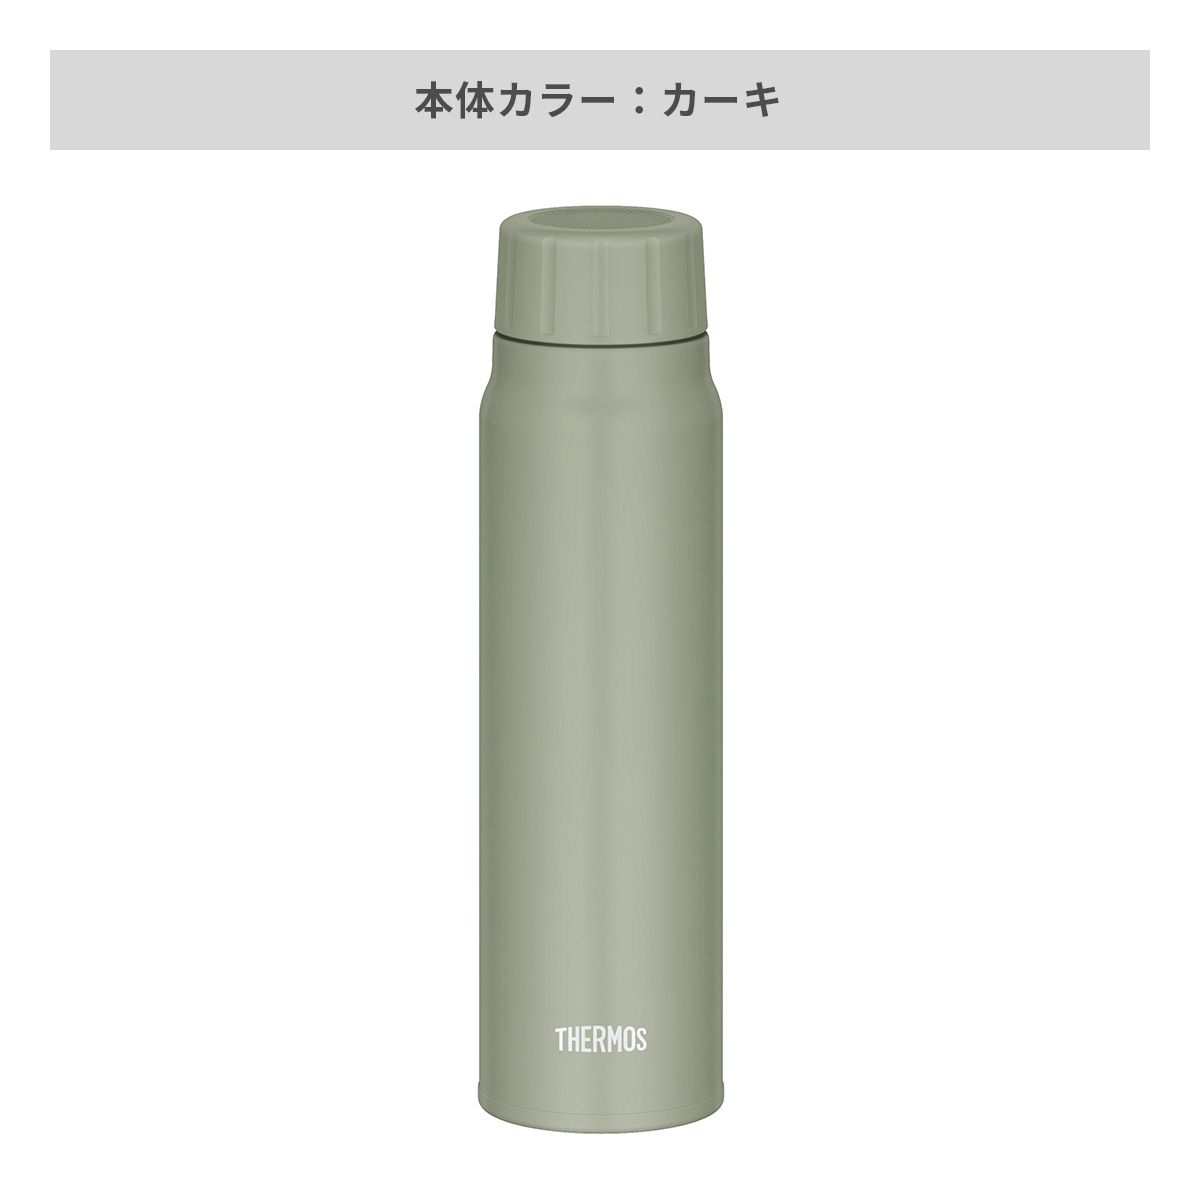 サーモス 保冷炭酸飲料ボトル 500ml 【オリジナルステンレスボトル